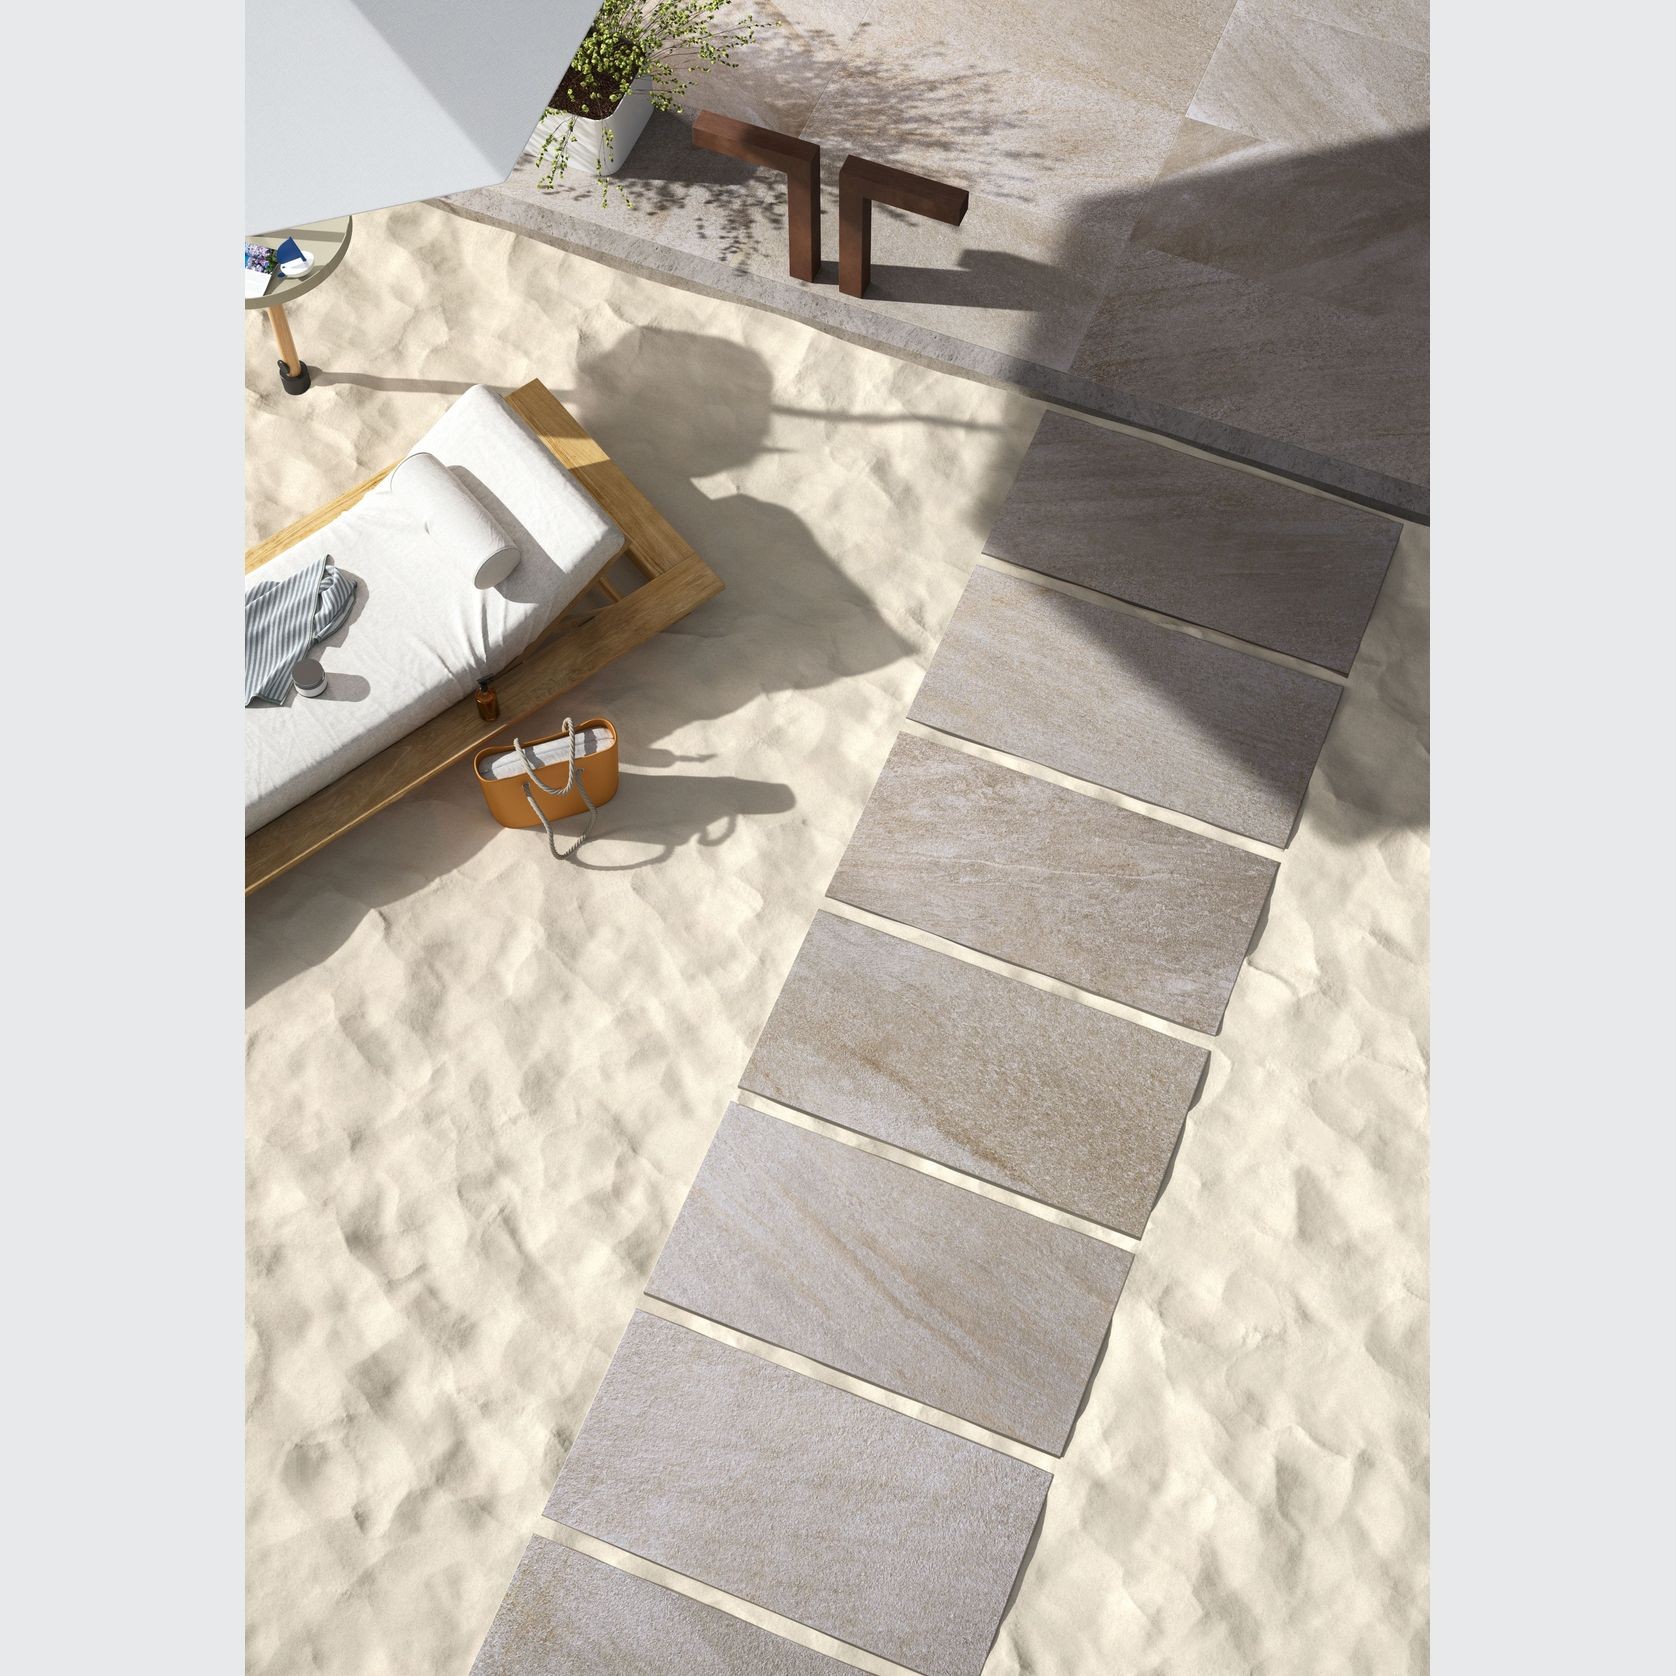 Stonequartz by Cotto d'Este - Outdoor Tiles gallery detail image